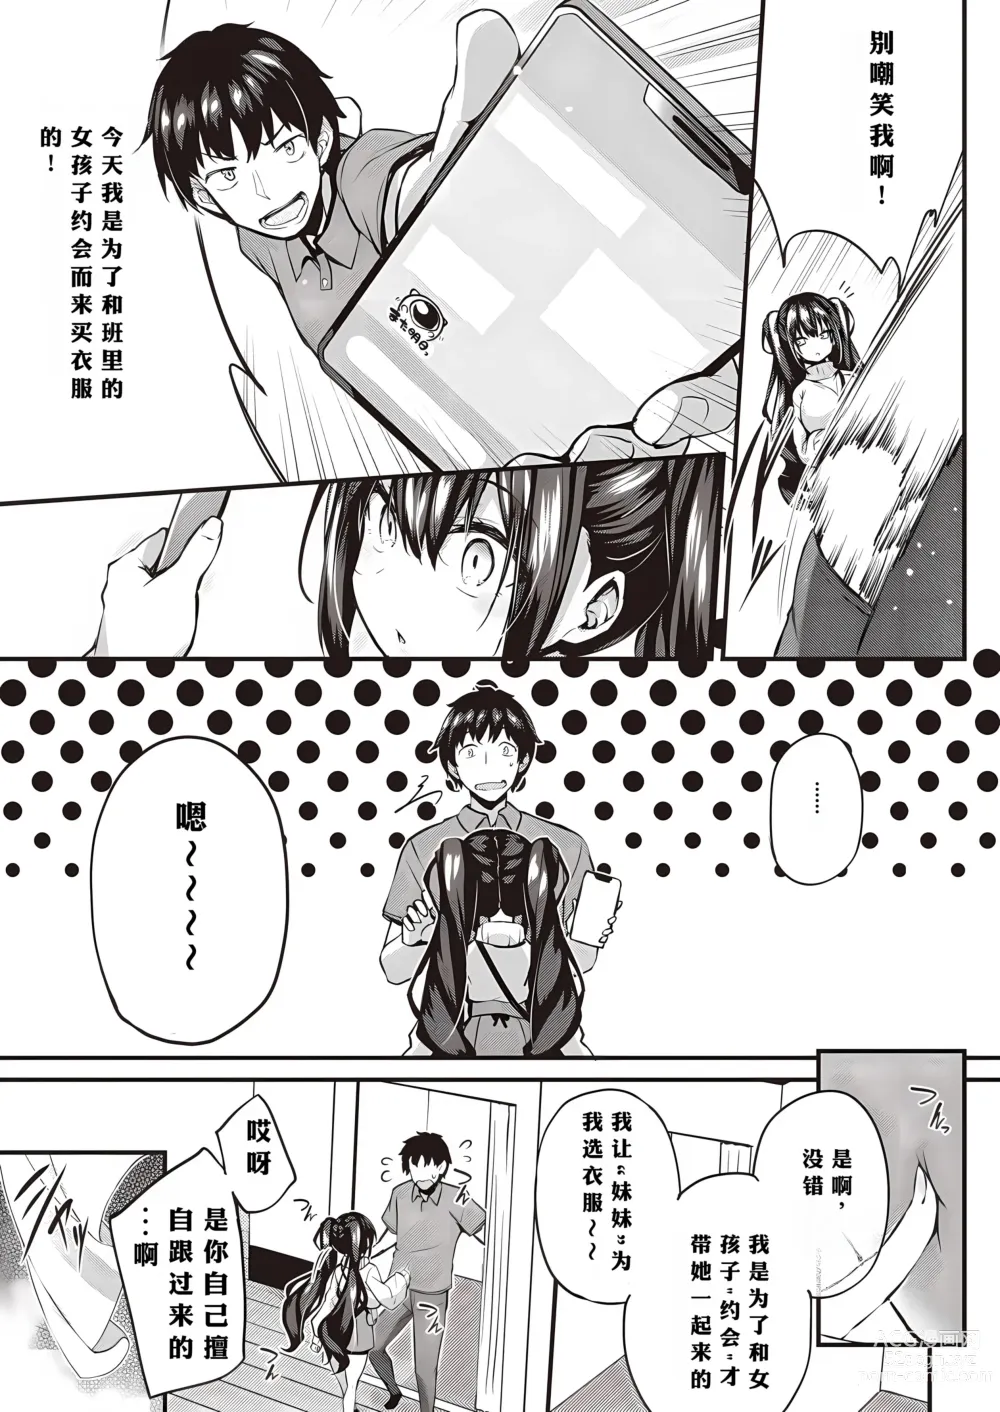 Page 19 of manga Oshiete Ageru + Motto Oshiete Ageru